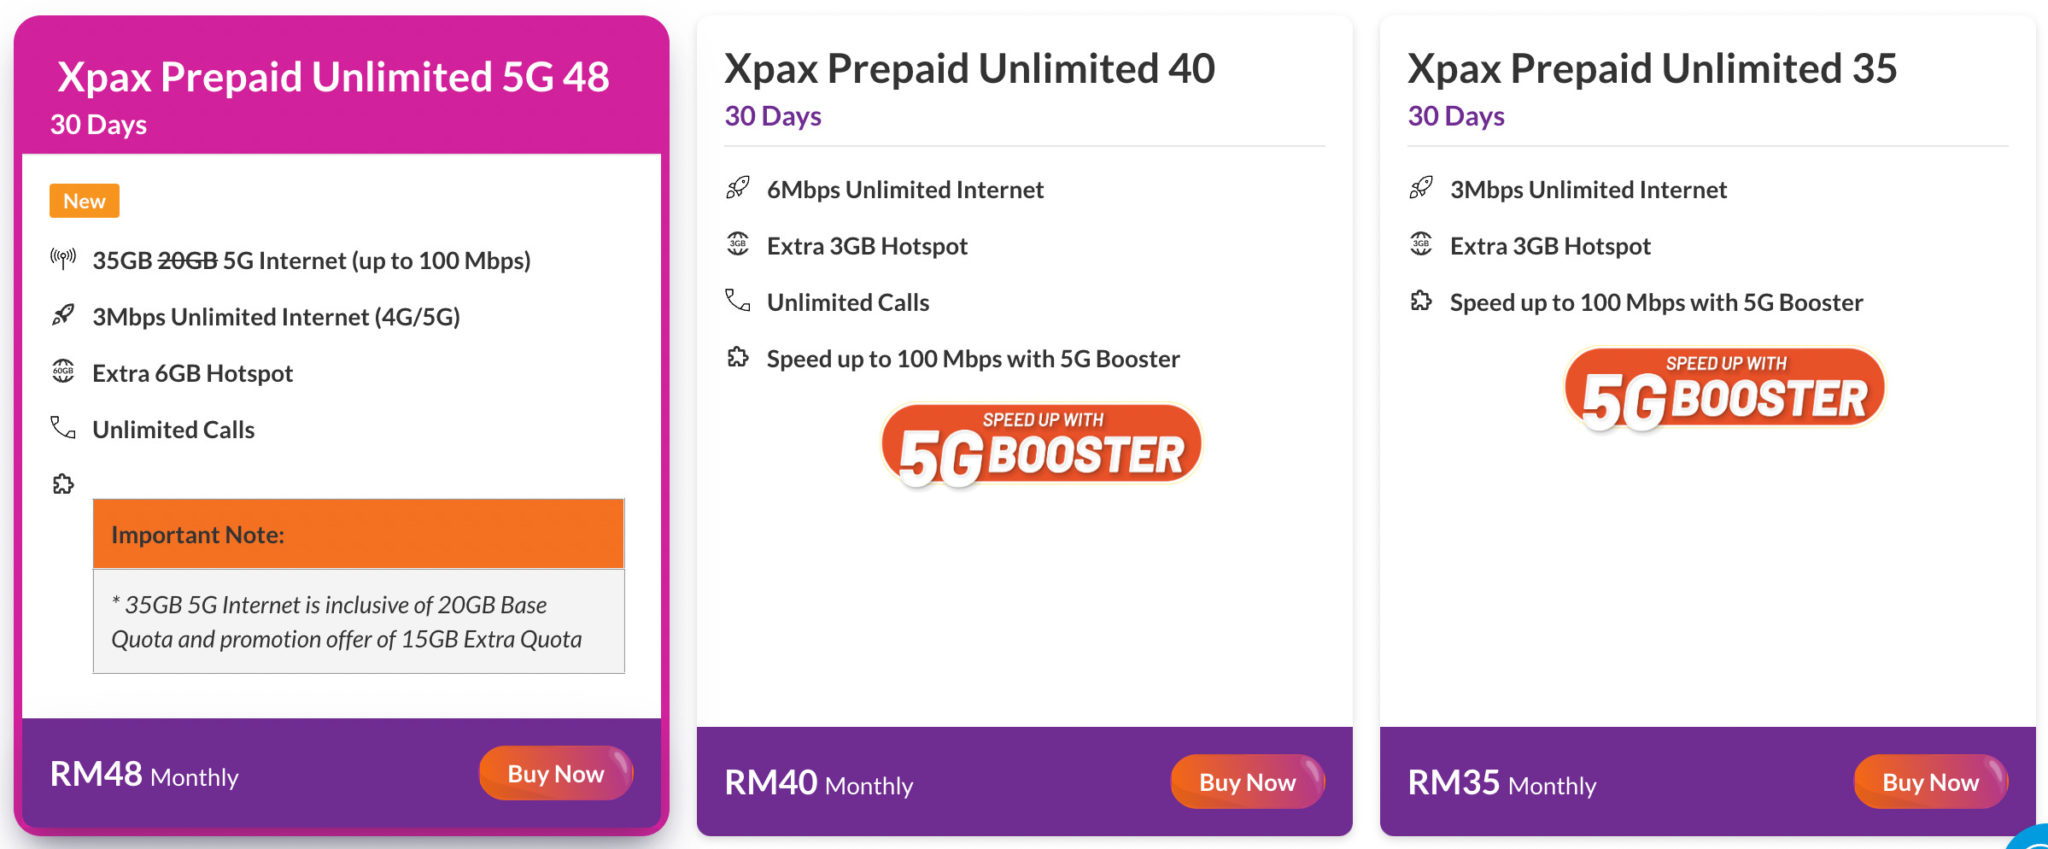 xpax prepaid 5g 48